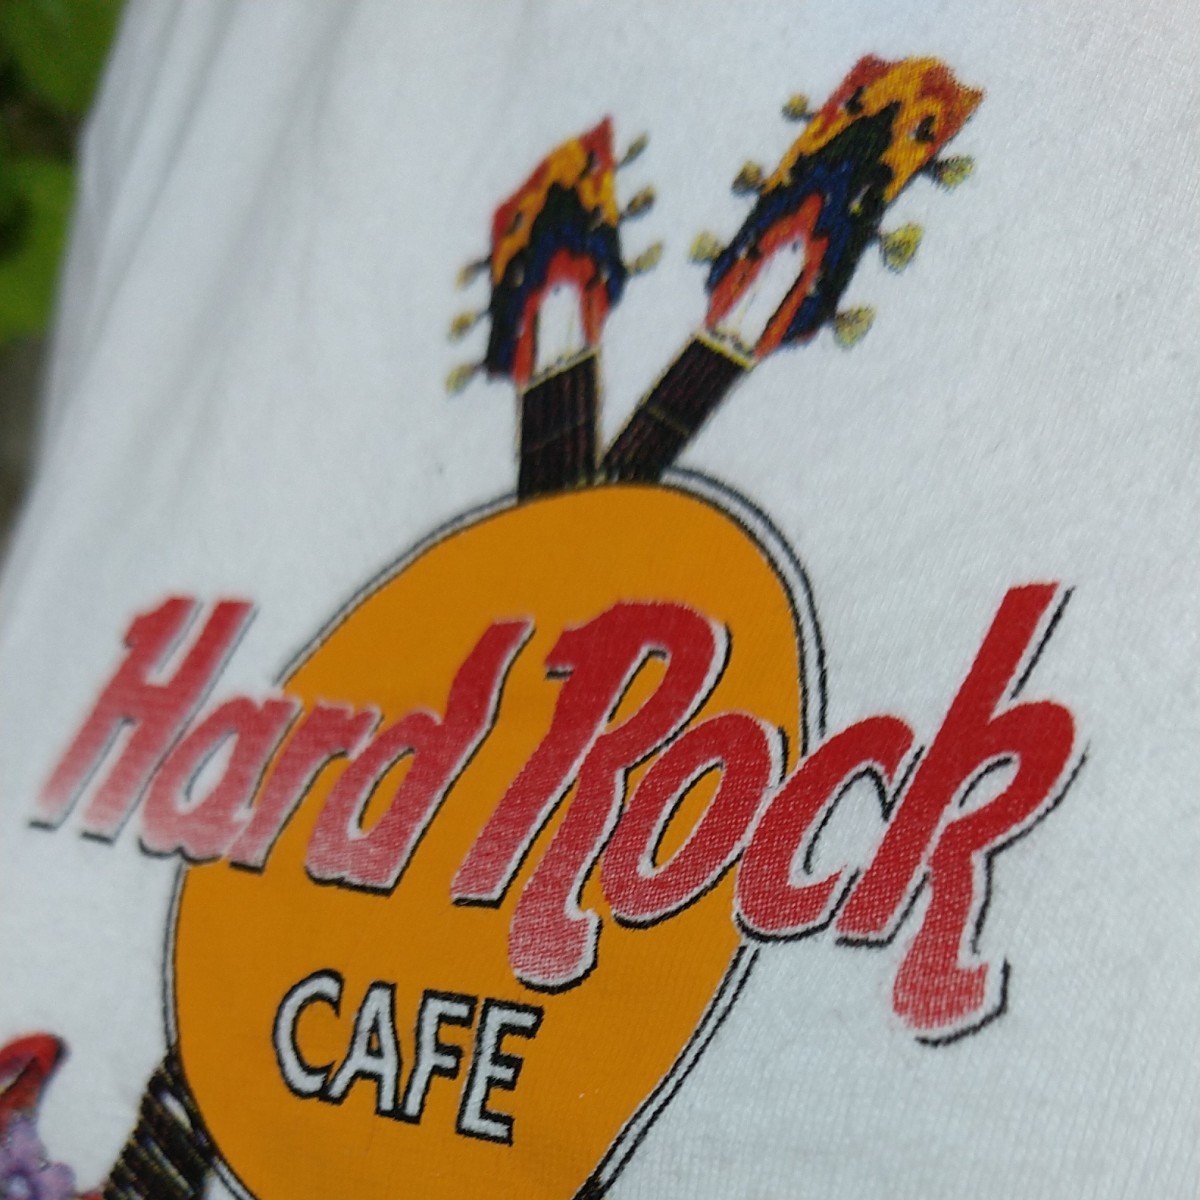 ハードロックカフェ半袖TシャツM　白「GUAM」ツインギターにラメがきれいなお花プリント♪　可愛い！　Hard Rock Cafe